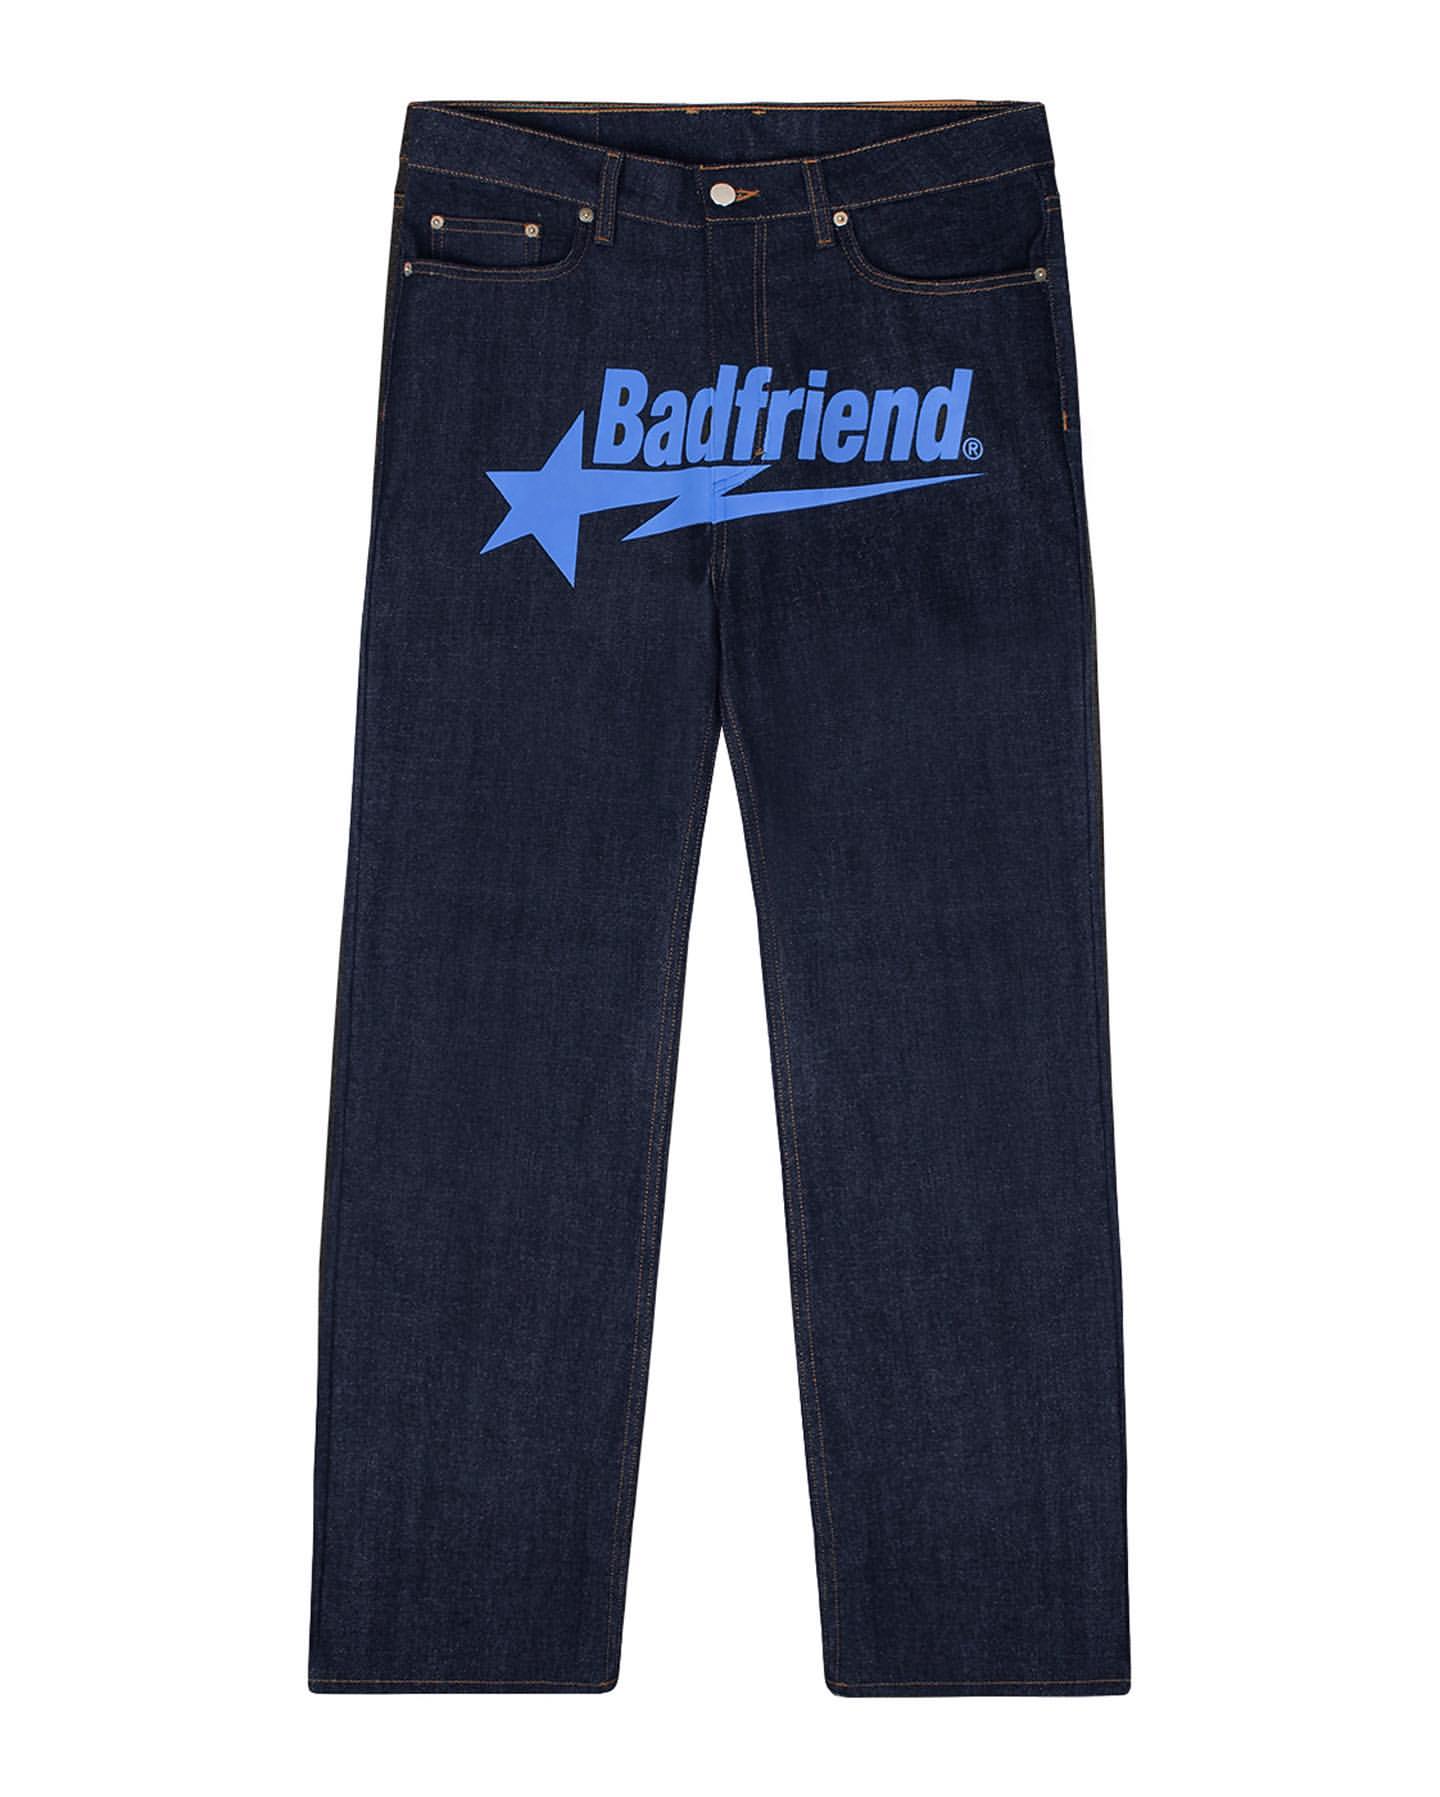 color badfriend jeans